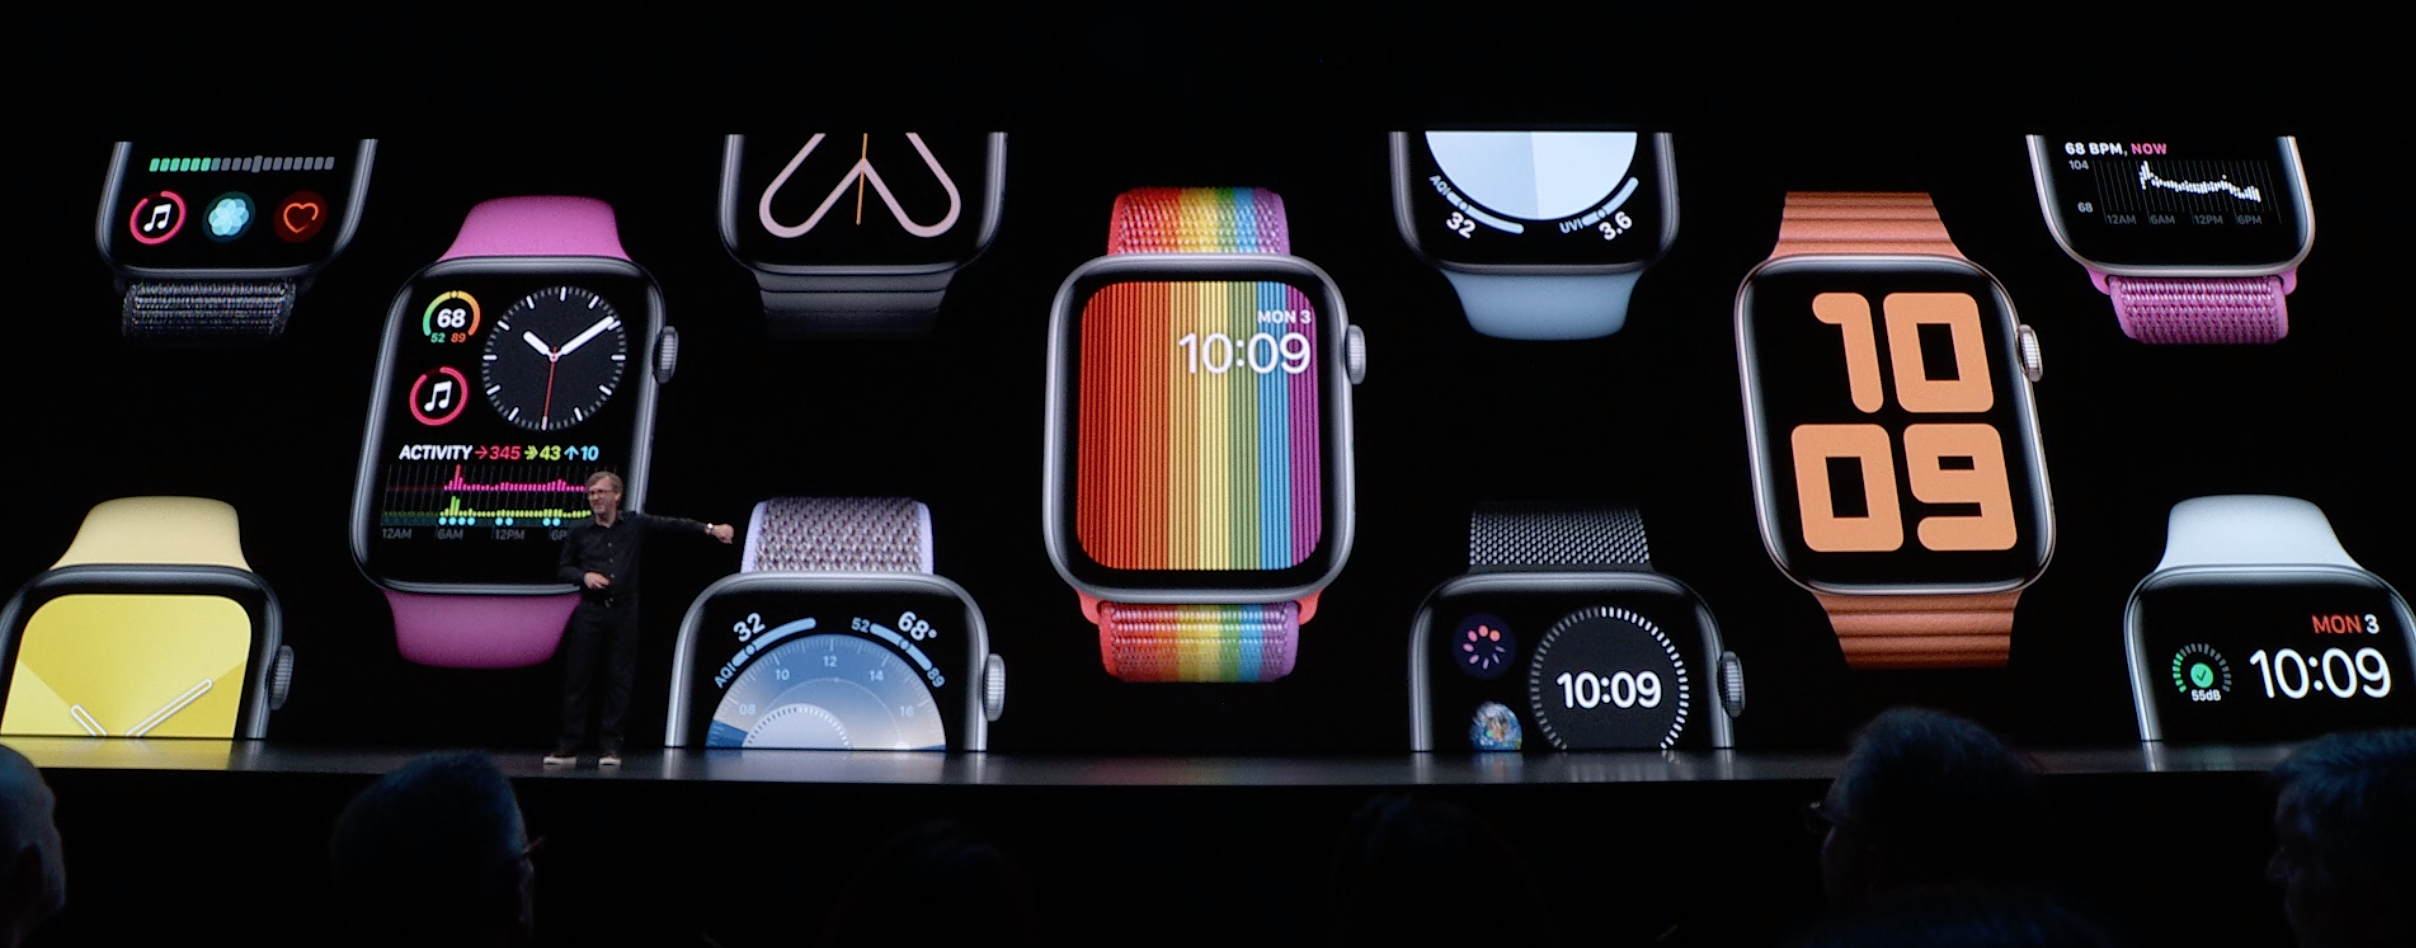 Uudet Apple Watch -rannekkeet sointuvat watchOS 6:n mukana julkaistaviin kellotauluihin.